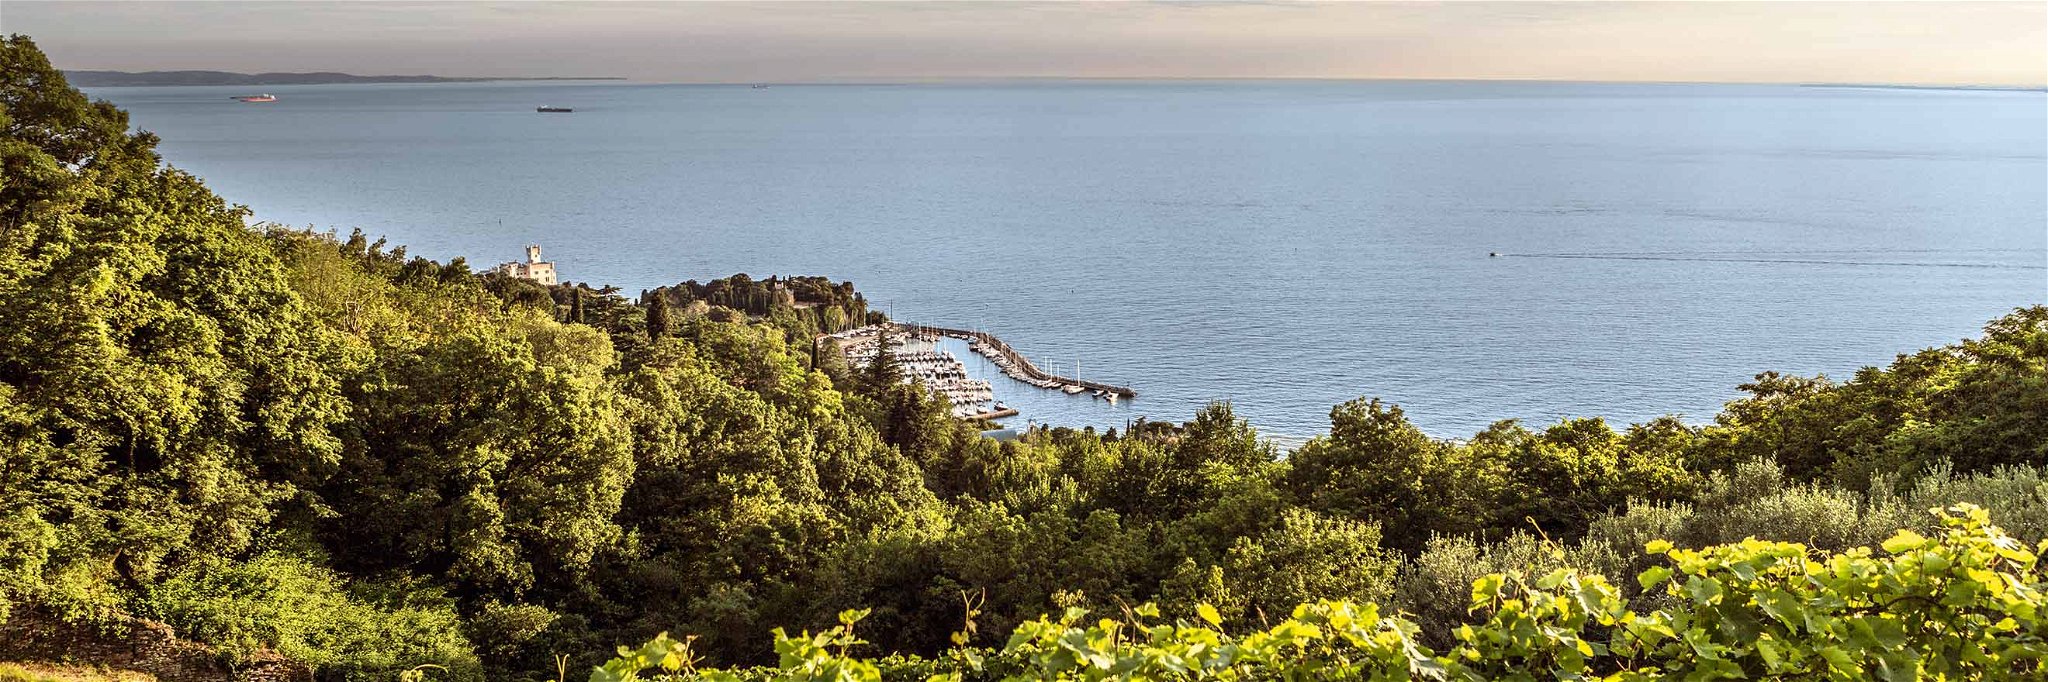 Wein- und Ölkompetenz hat seit 1898 einen Namen in Triest: Parovel in San Dorligo della Valle.